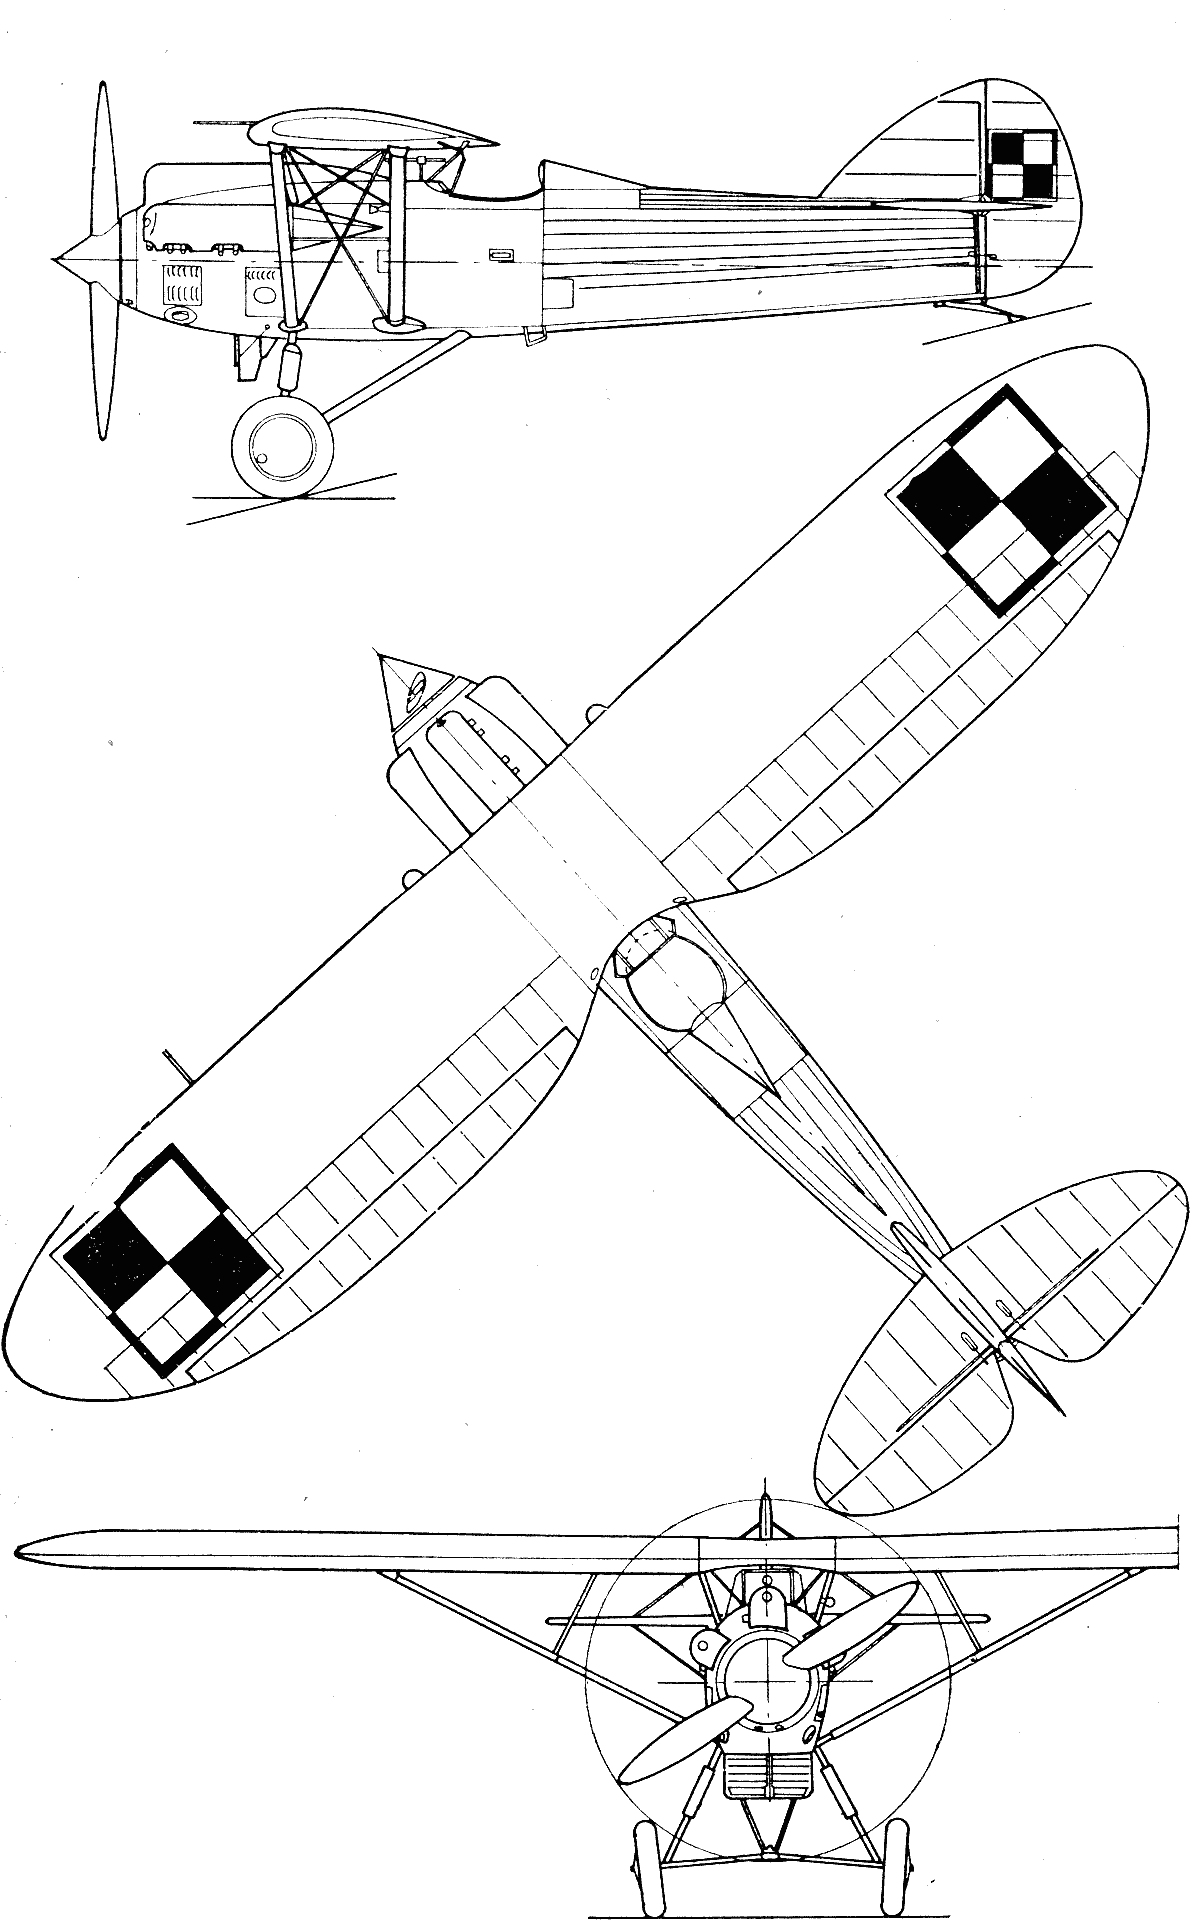 PWS-10 blueprint